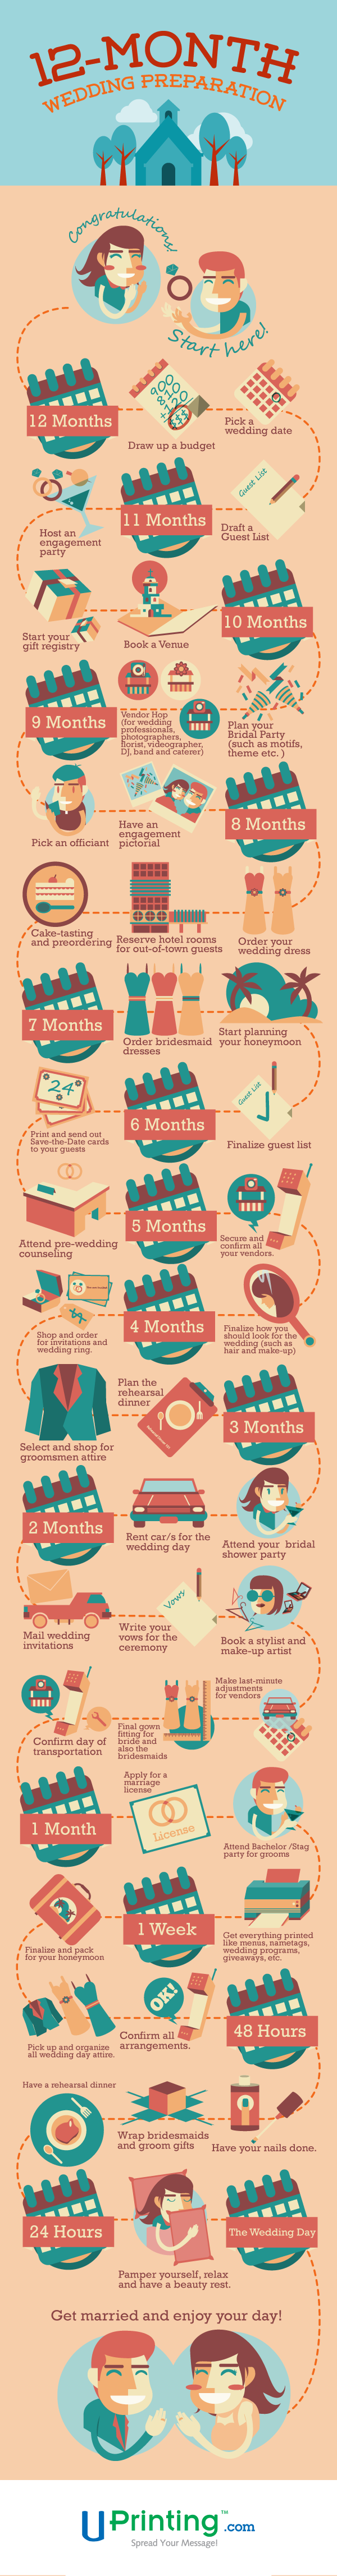 12-Month Wedding Plan Checklist